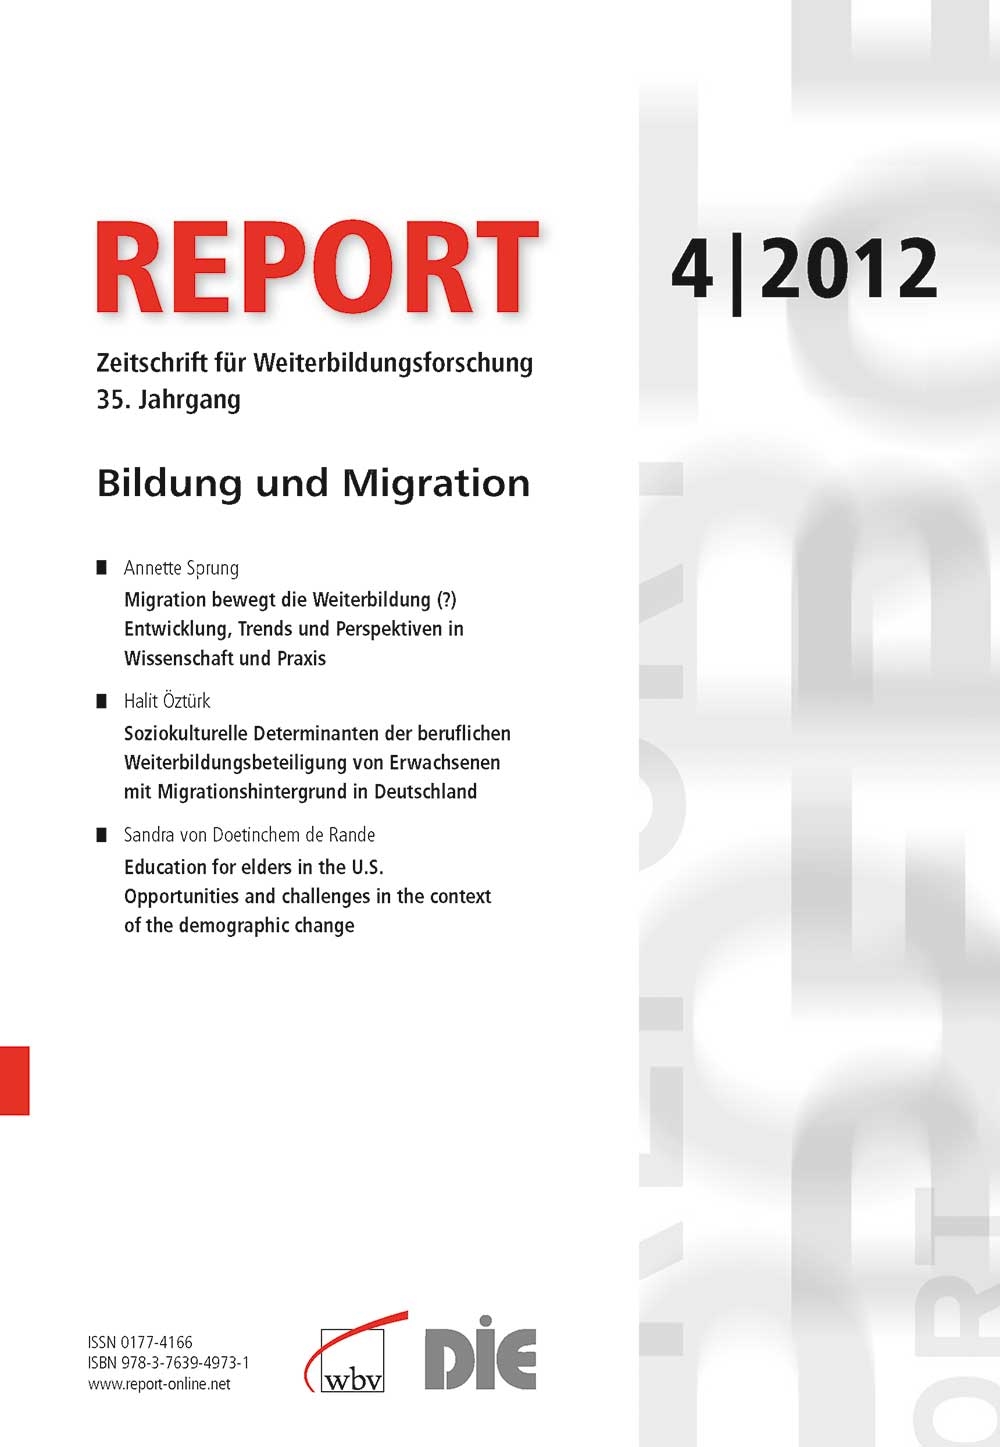 REPORT - Zeitschrift für Weiterbildungsforschung 04/2012